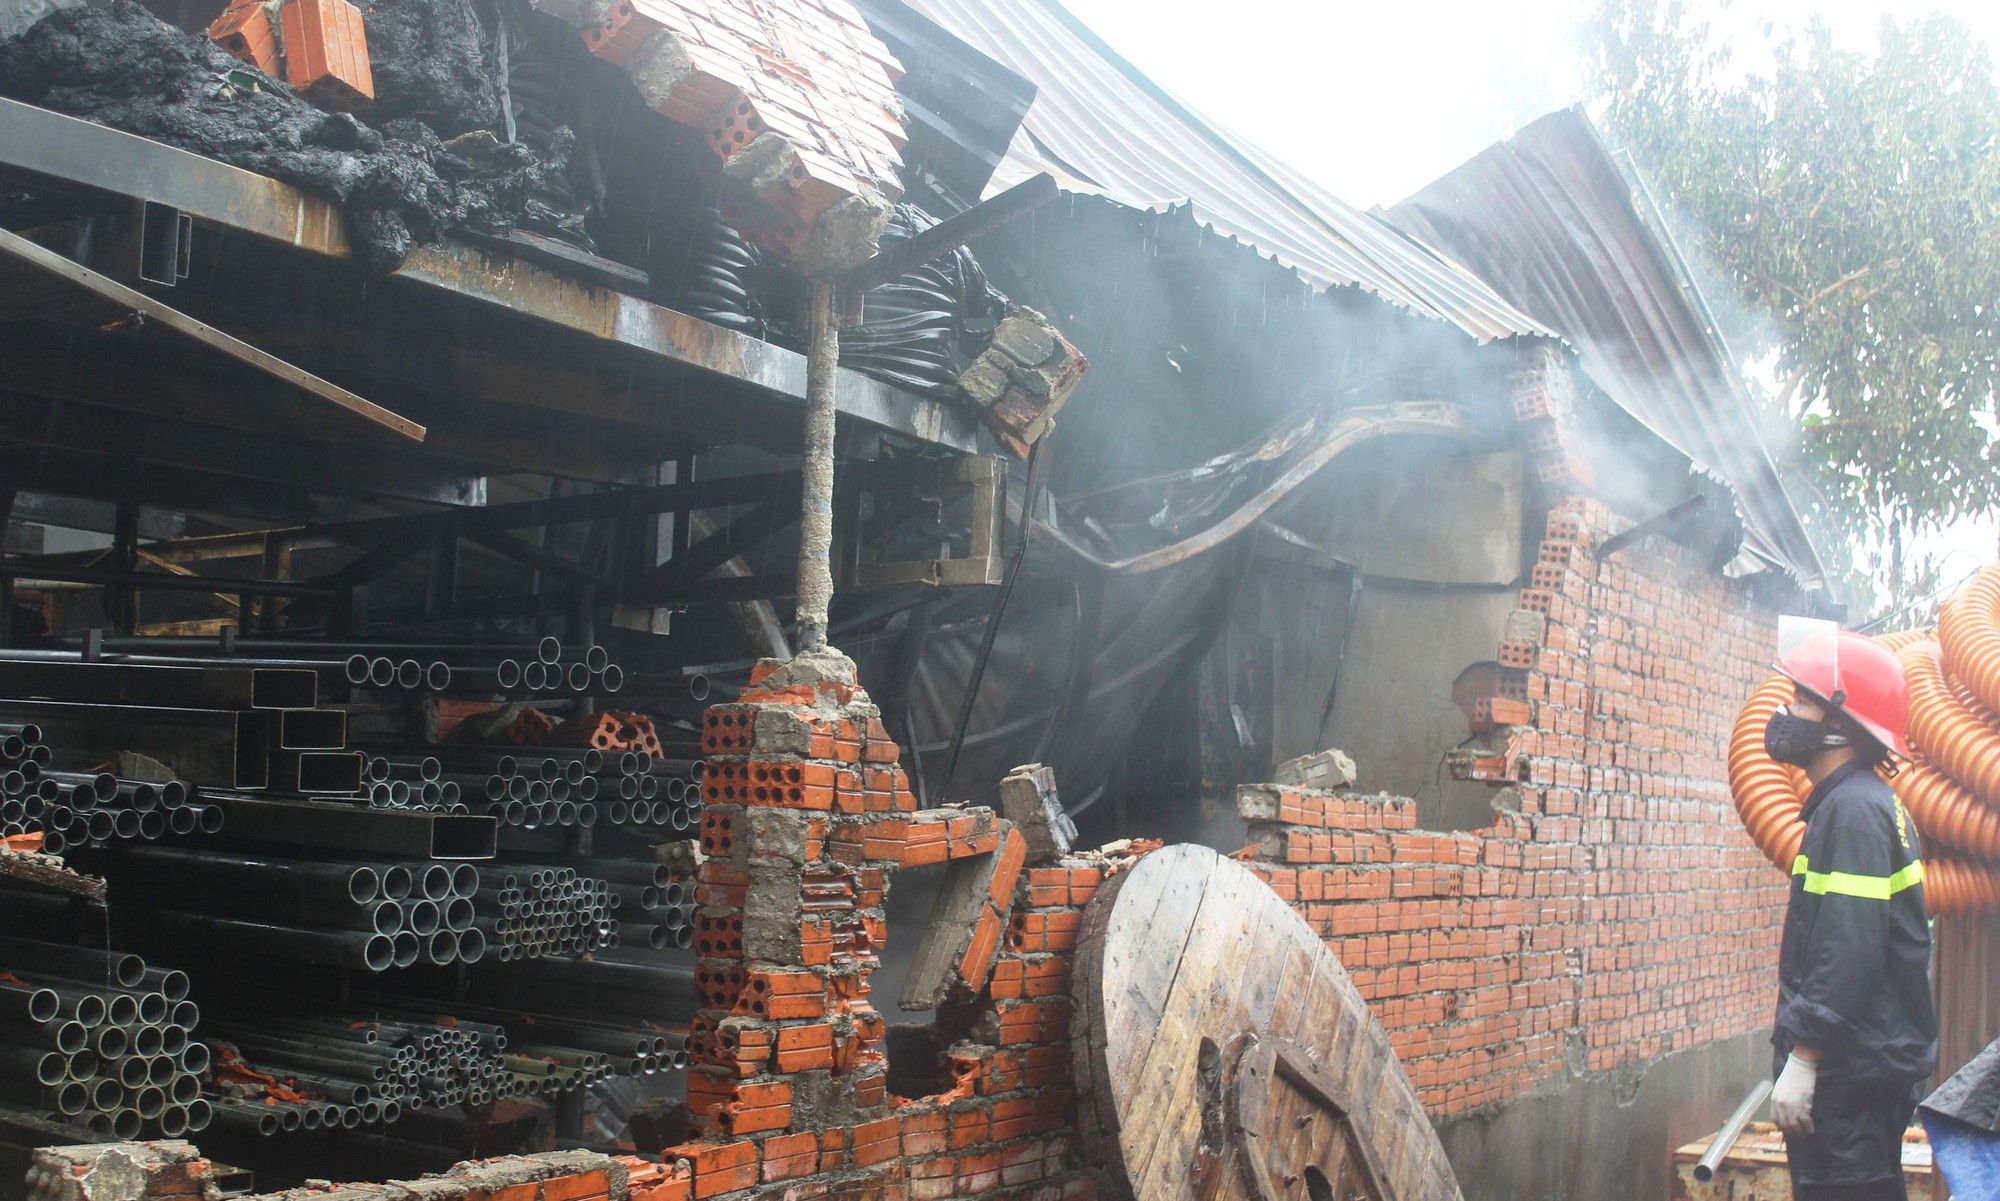 Cận cảnh hiện trường đám cháy lớn tại kho chứa hàng ở Quảng Nam - Ảnh 15.